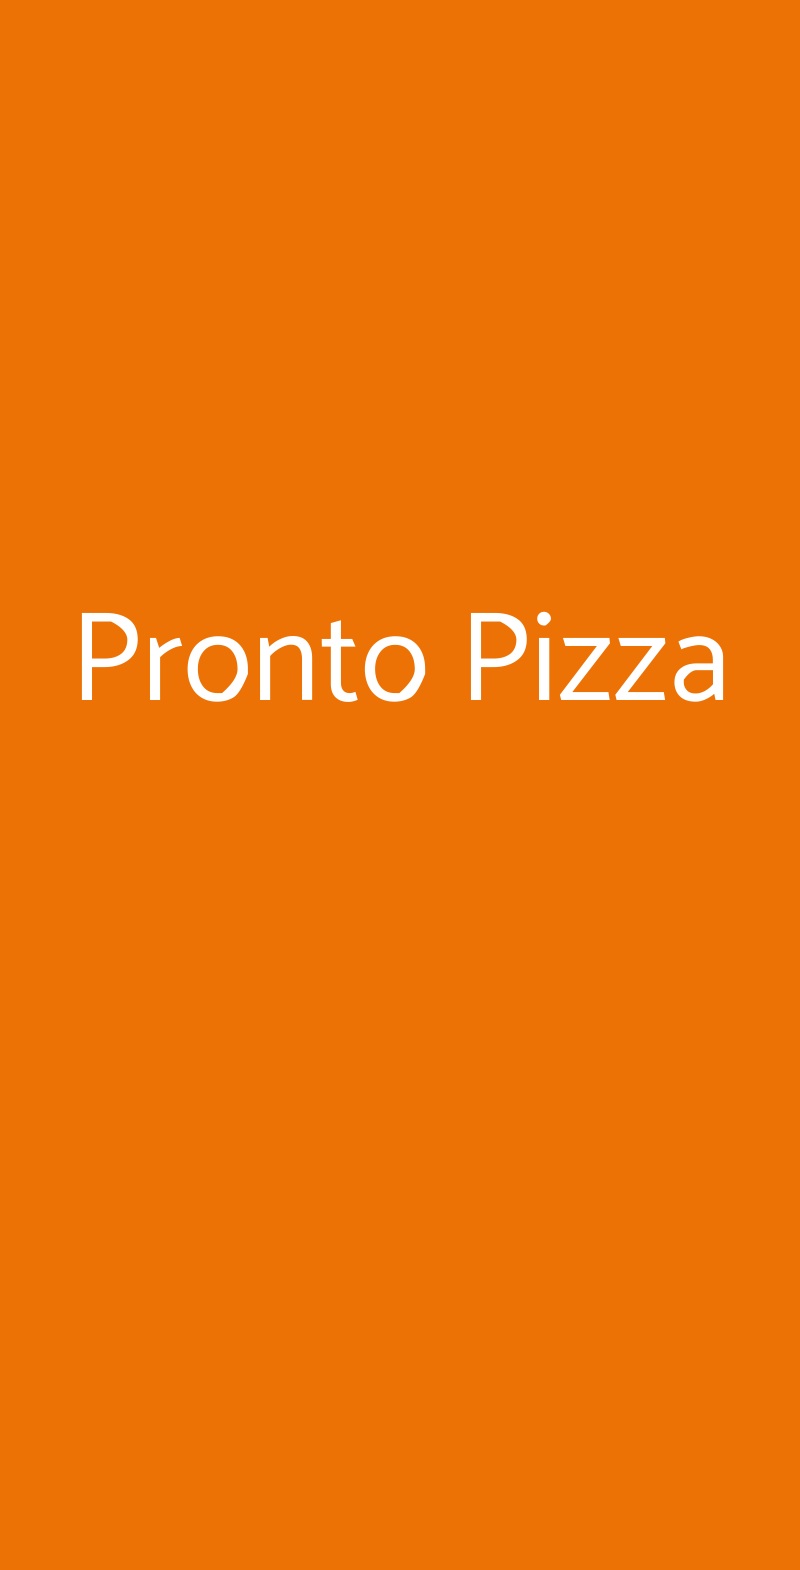 Pronto Pizza Milano menù 1 pagina